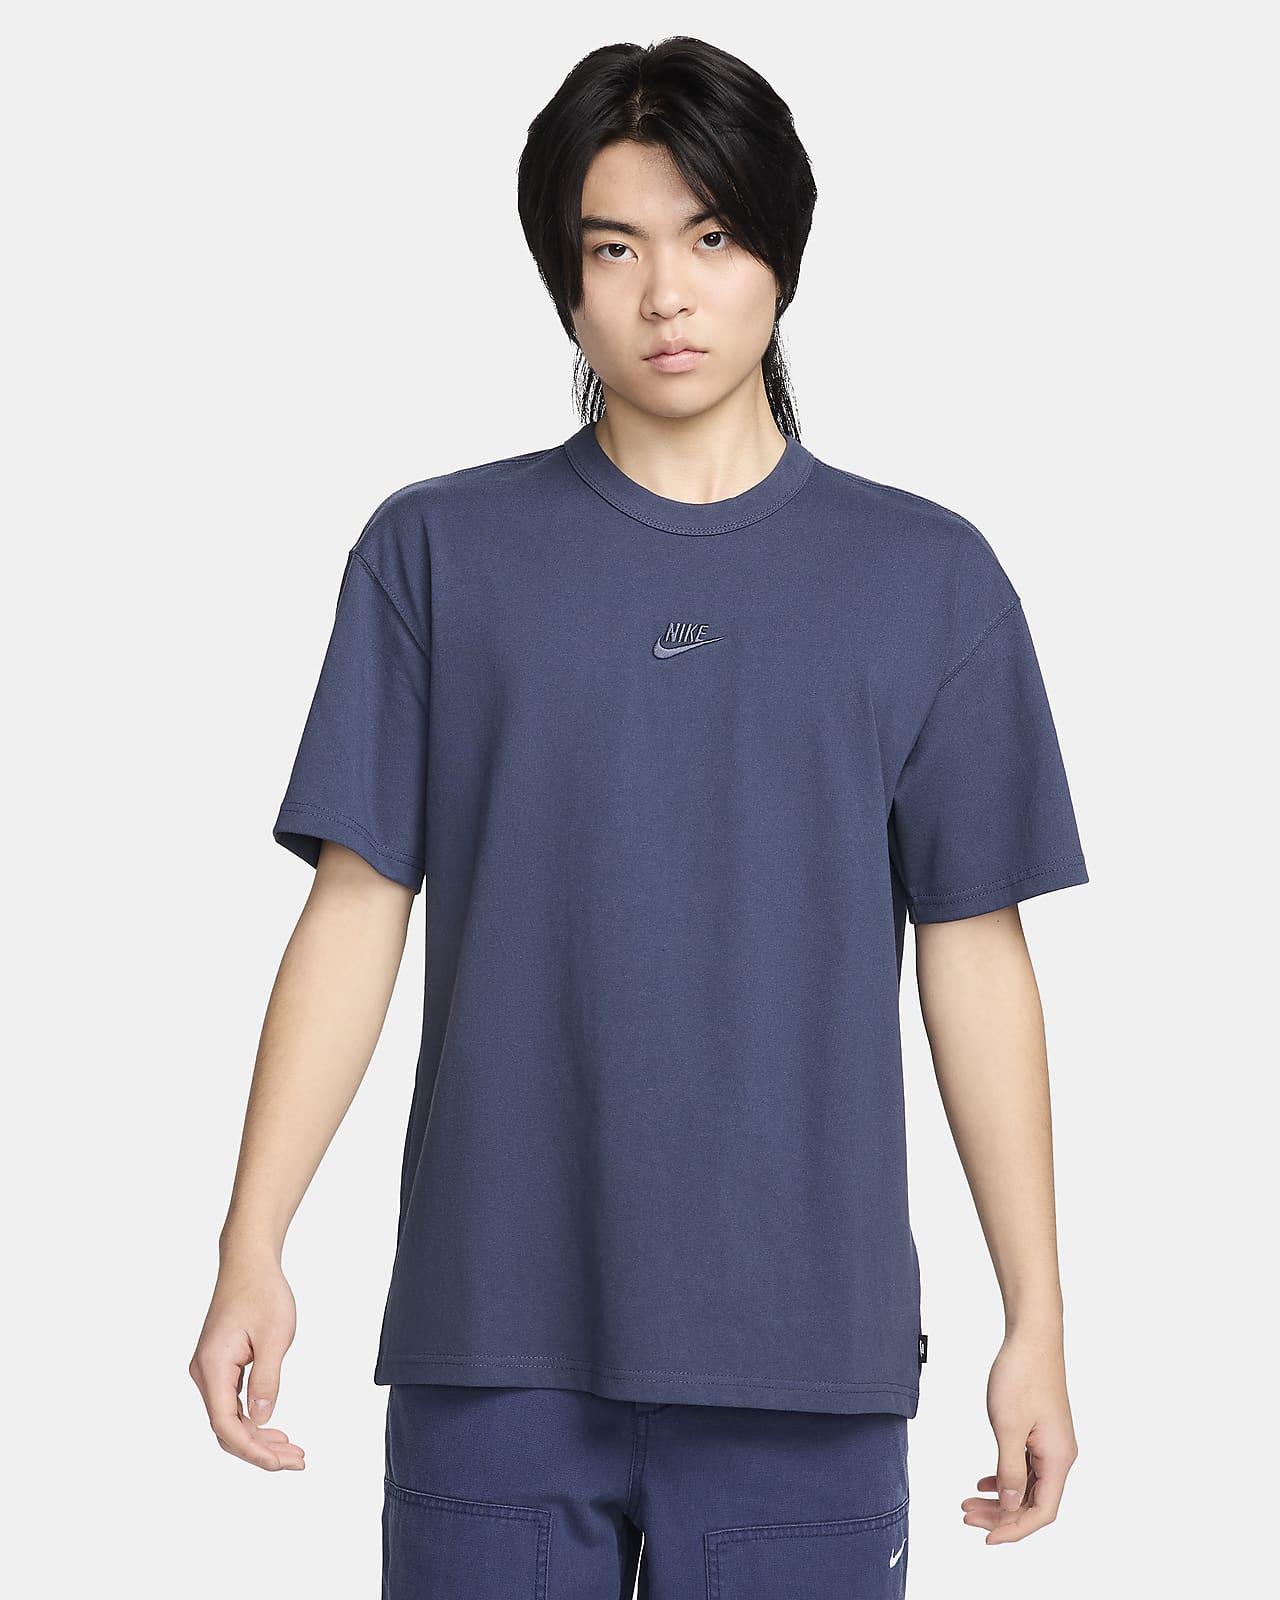 나이키 스포츠웨어 프리미엄 에센셜 남성 티셔츠